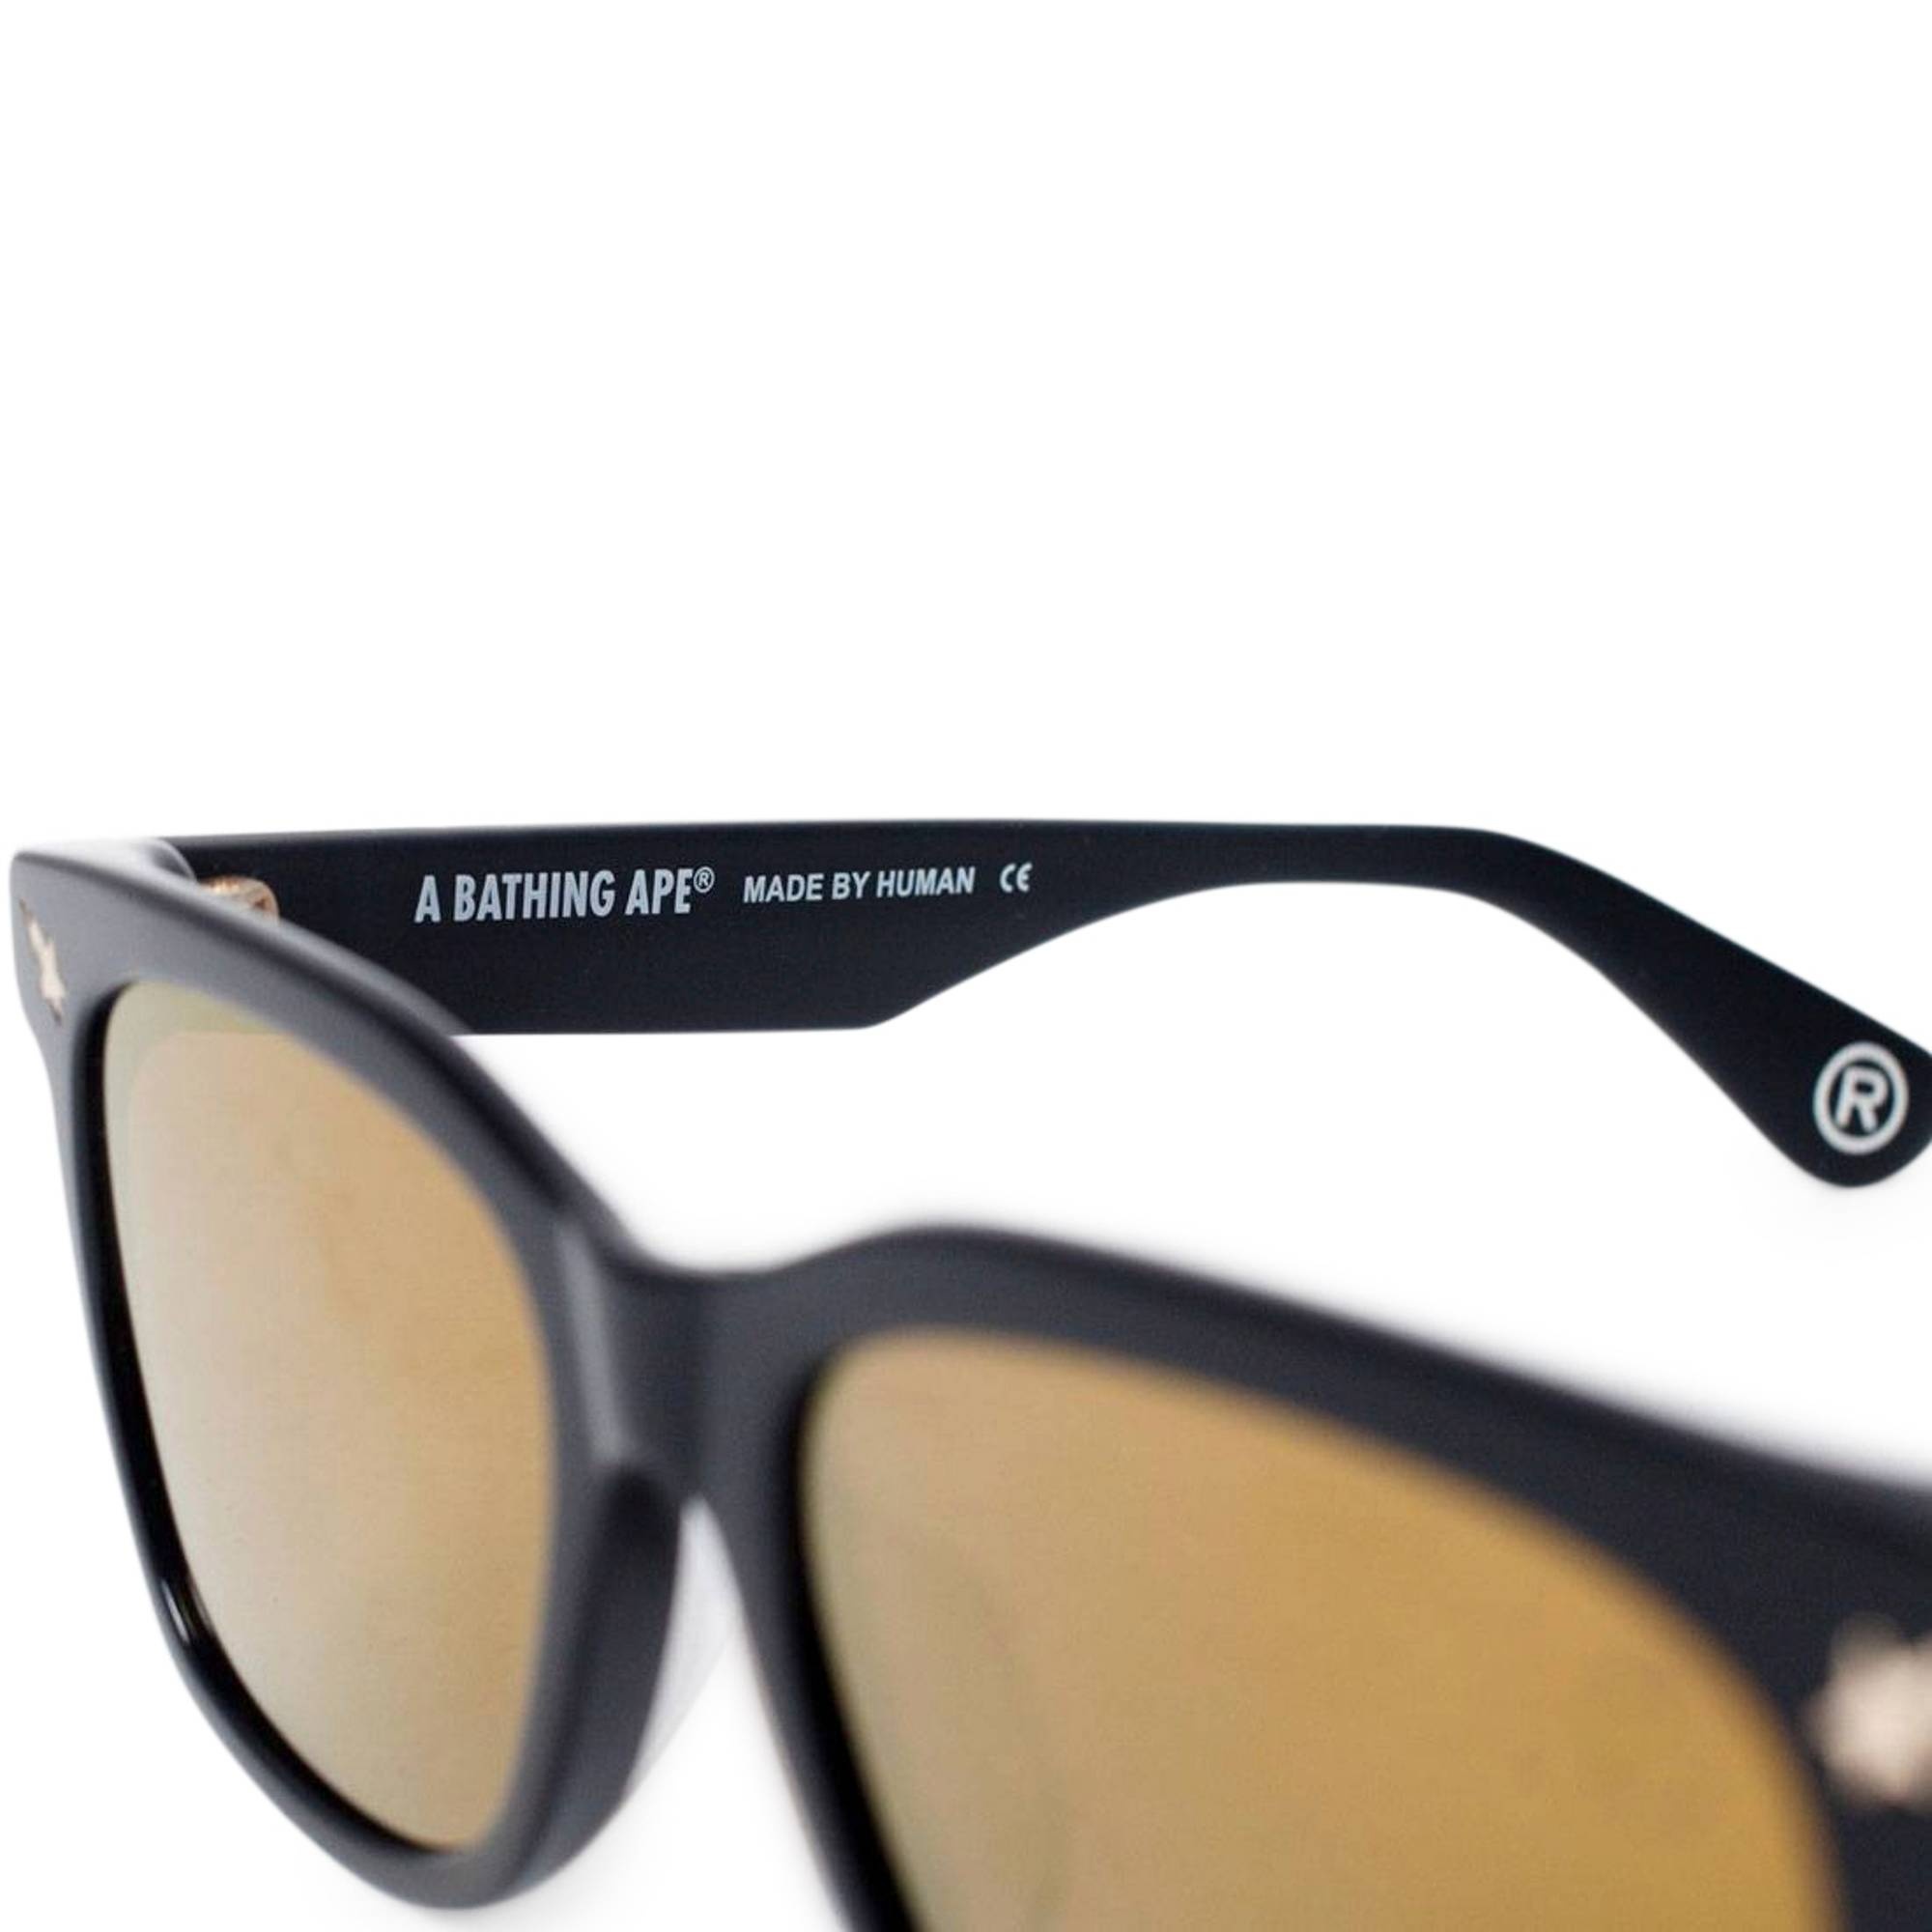 BAPE Sunglasses 'Black/Camo' - 2